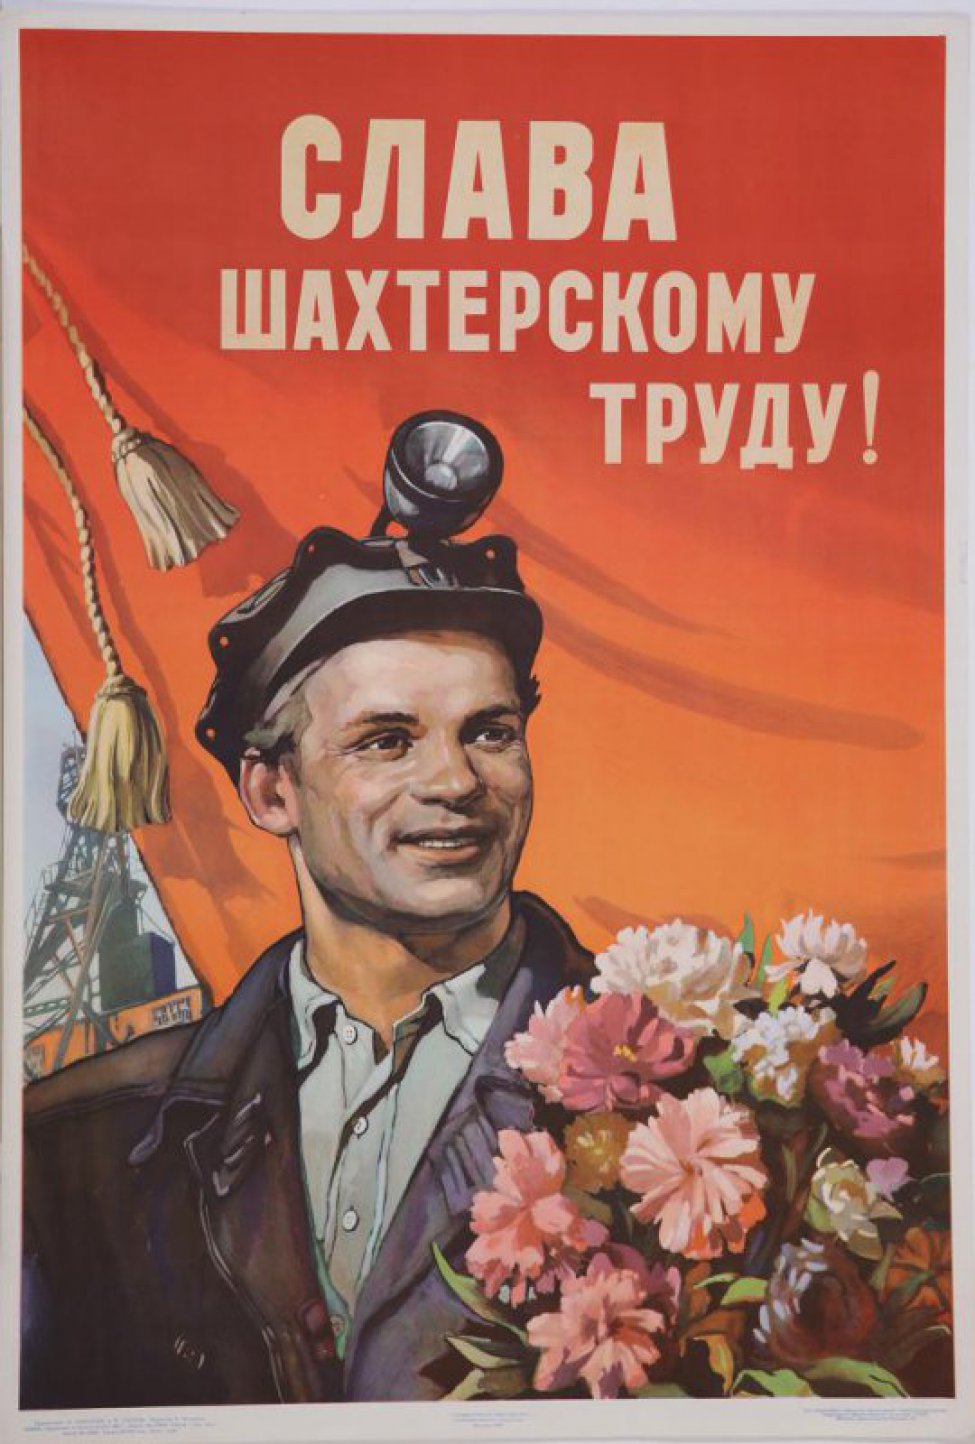 Изображен молодой шахтер в расстегнутой спецовке с палубной лампой на фуражке и букетом цветов в руках. Он изображен на фоне шахты и красного знамени с кистями.